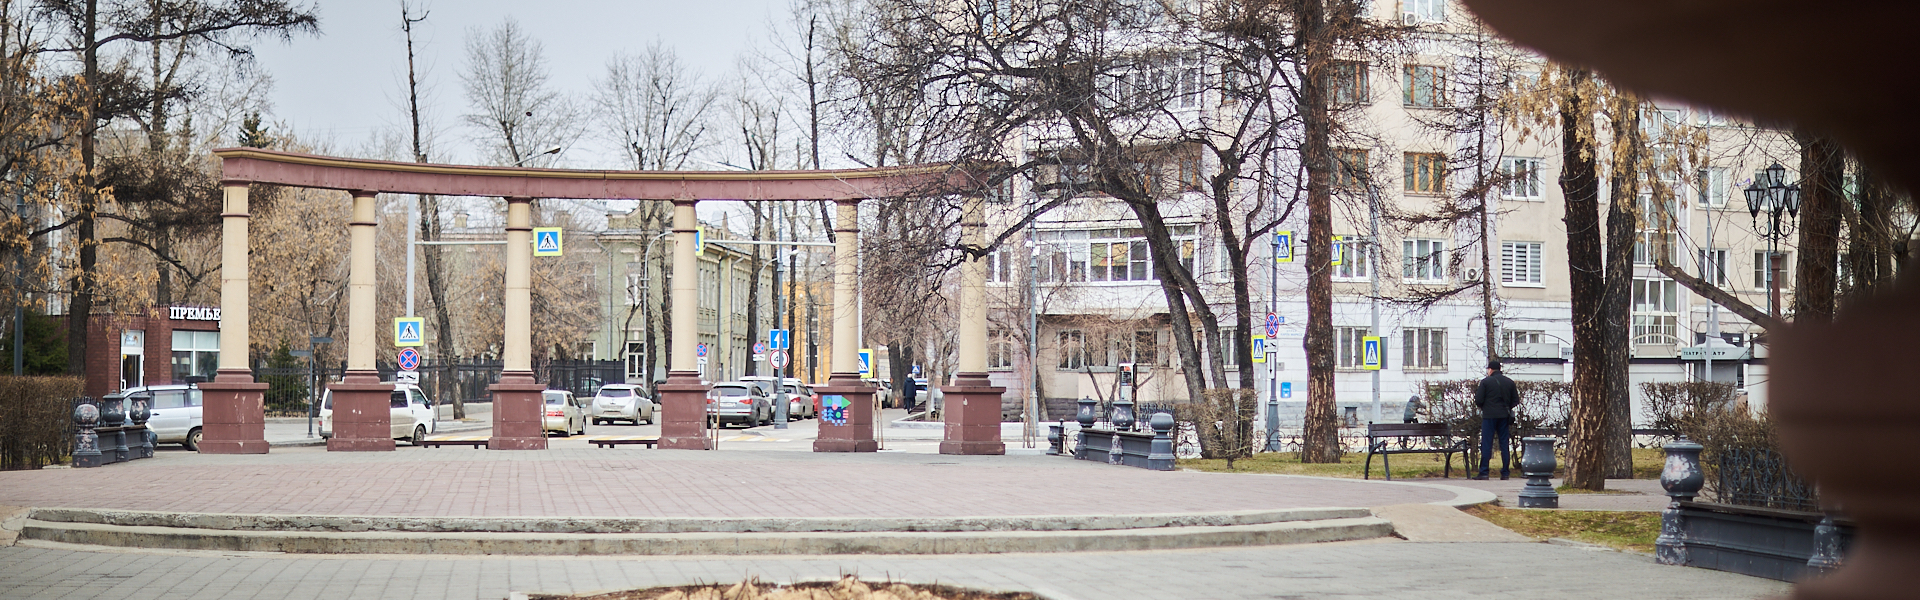 Сломанные скамейки и треснувший фонтан. Как выглядят скверы возле драмтеатра в Иркутске